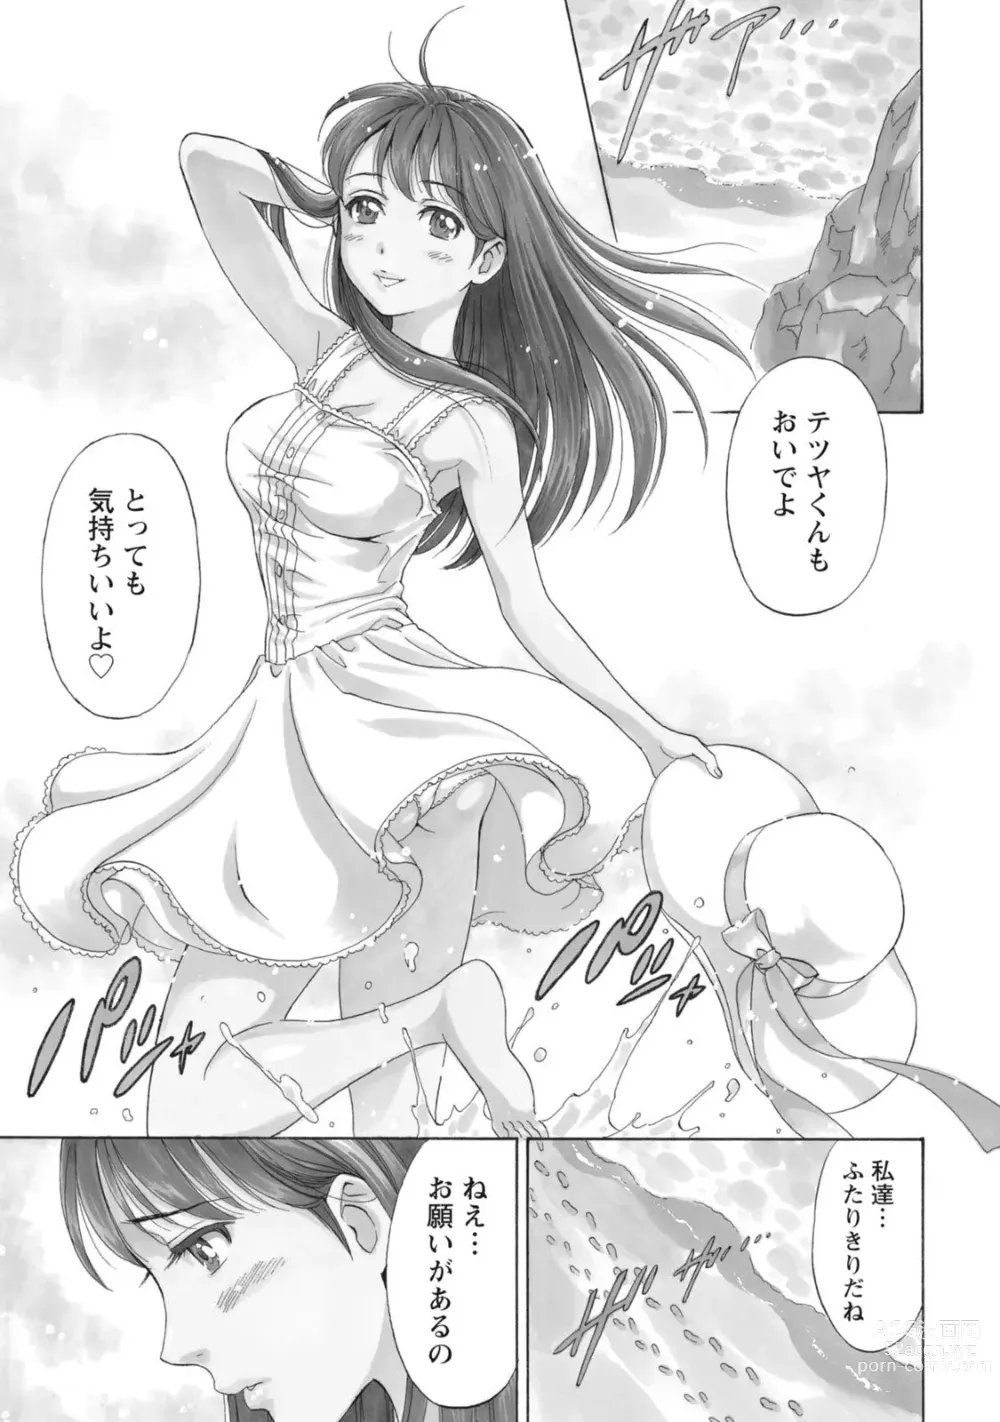 Page 5 of manga Nisekon!